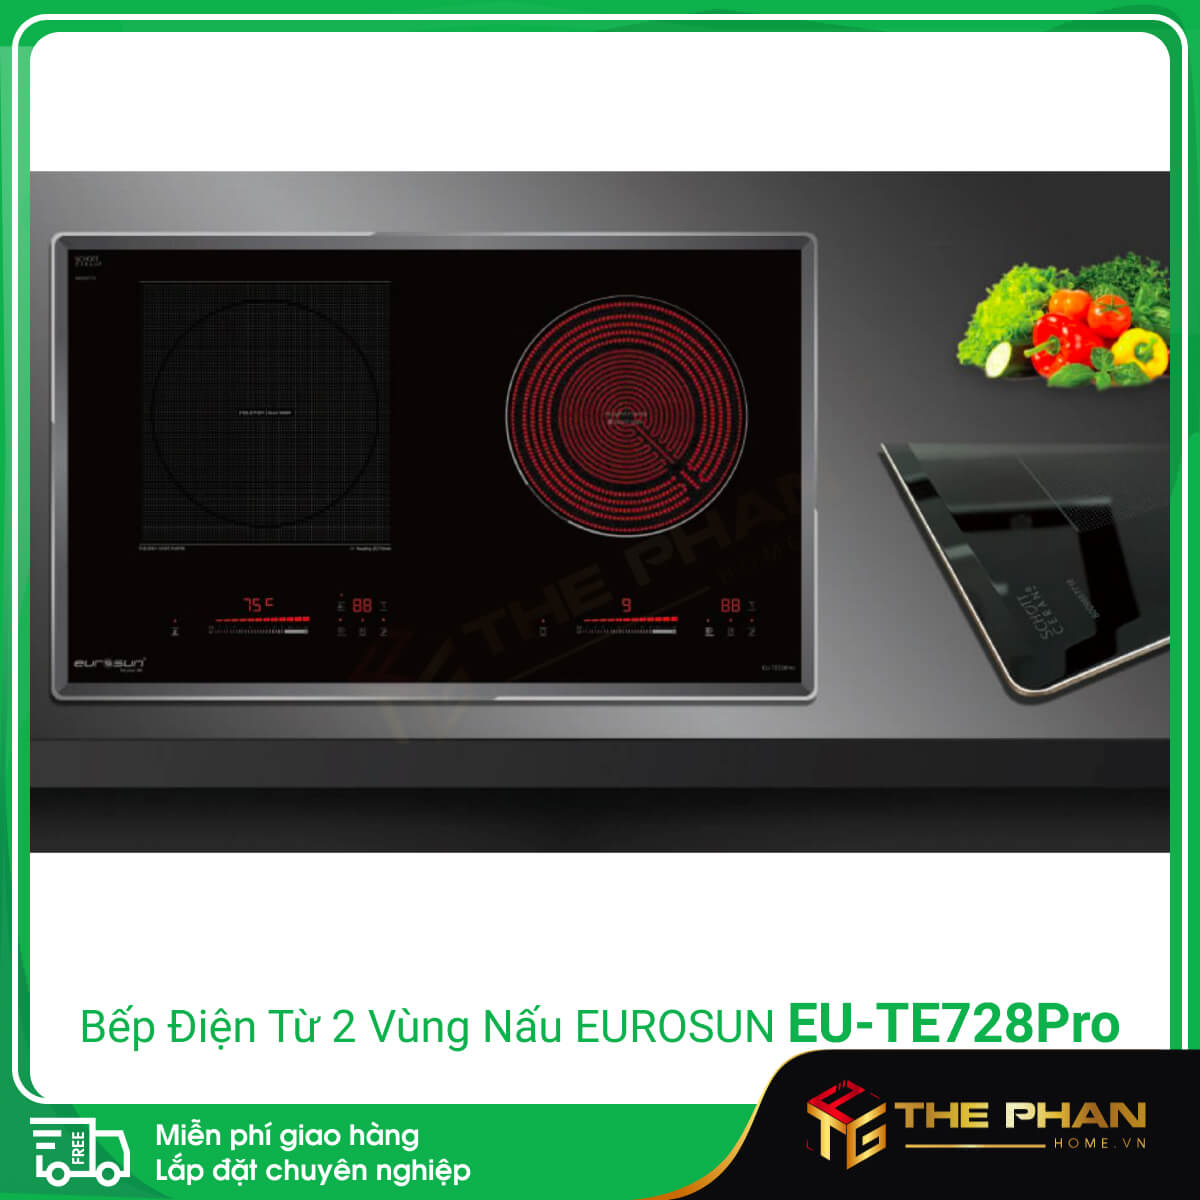 Hình ảnh thực tế của Bếp Điện Từ Đôi Eurosun EU-TE728Pro - Inverter thông minh, Cảm ứng từ + Hồng ngoại